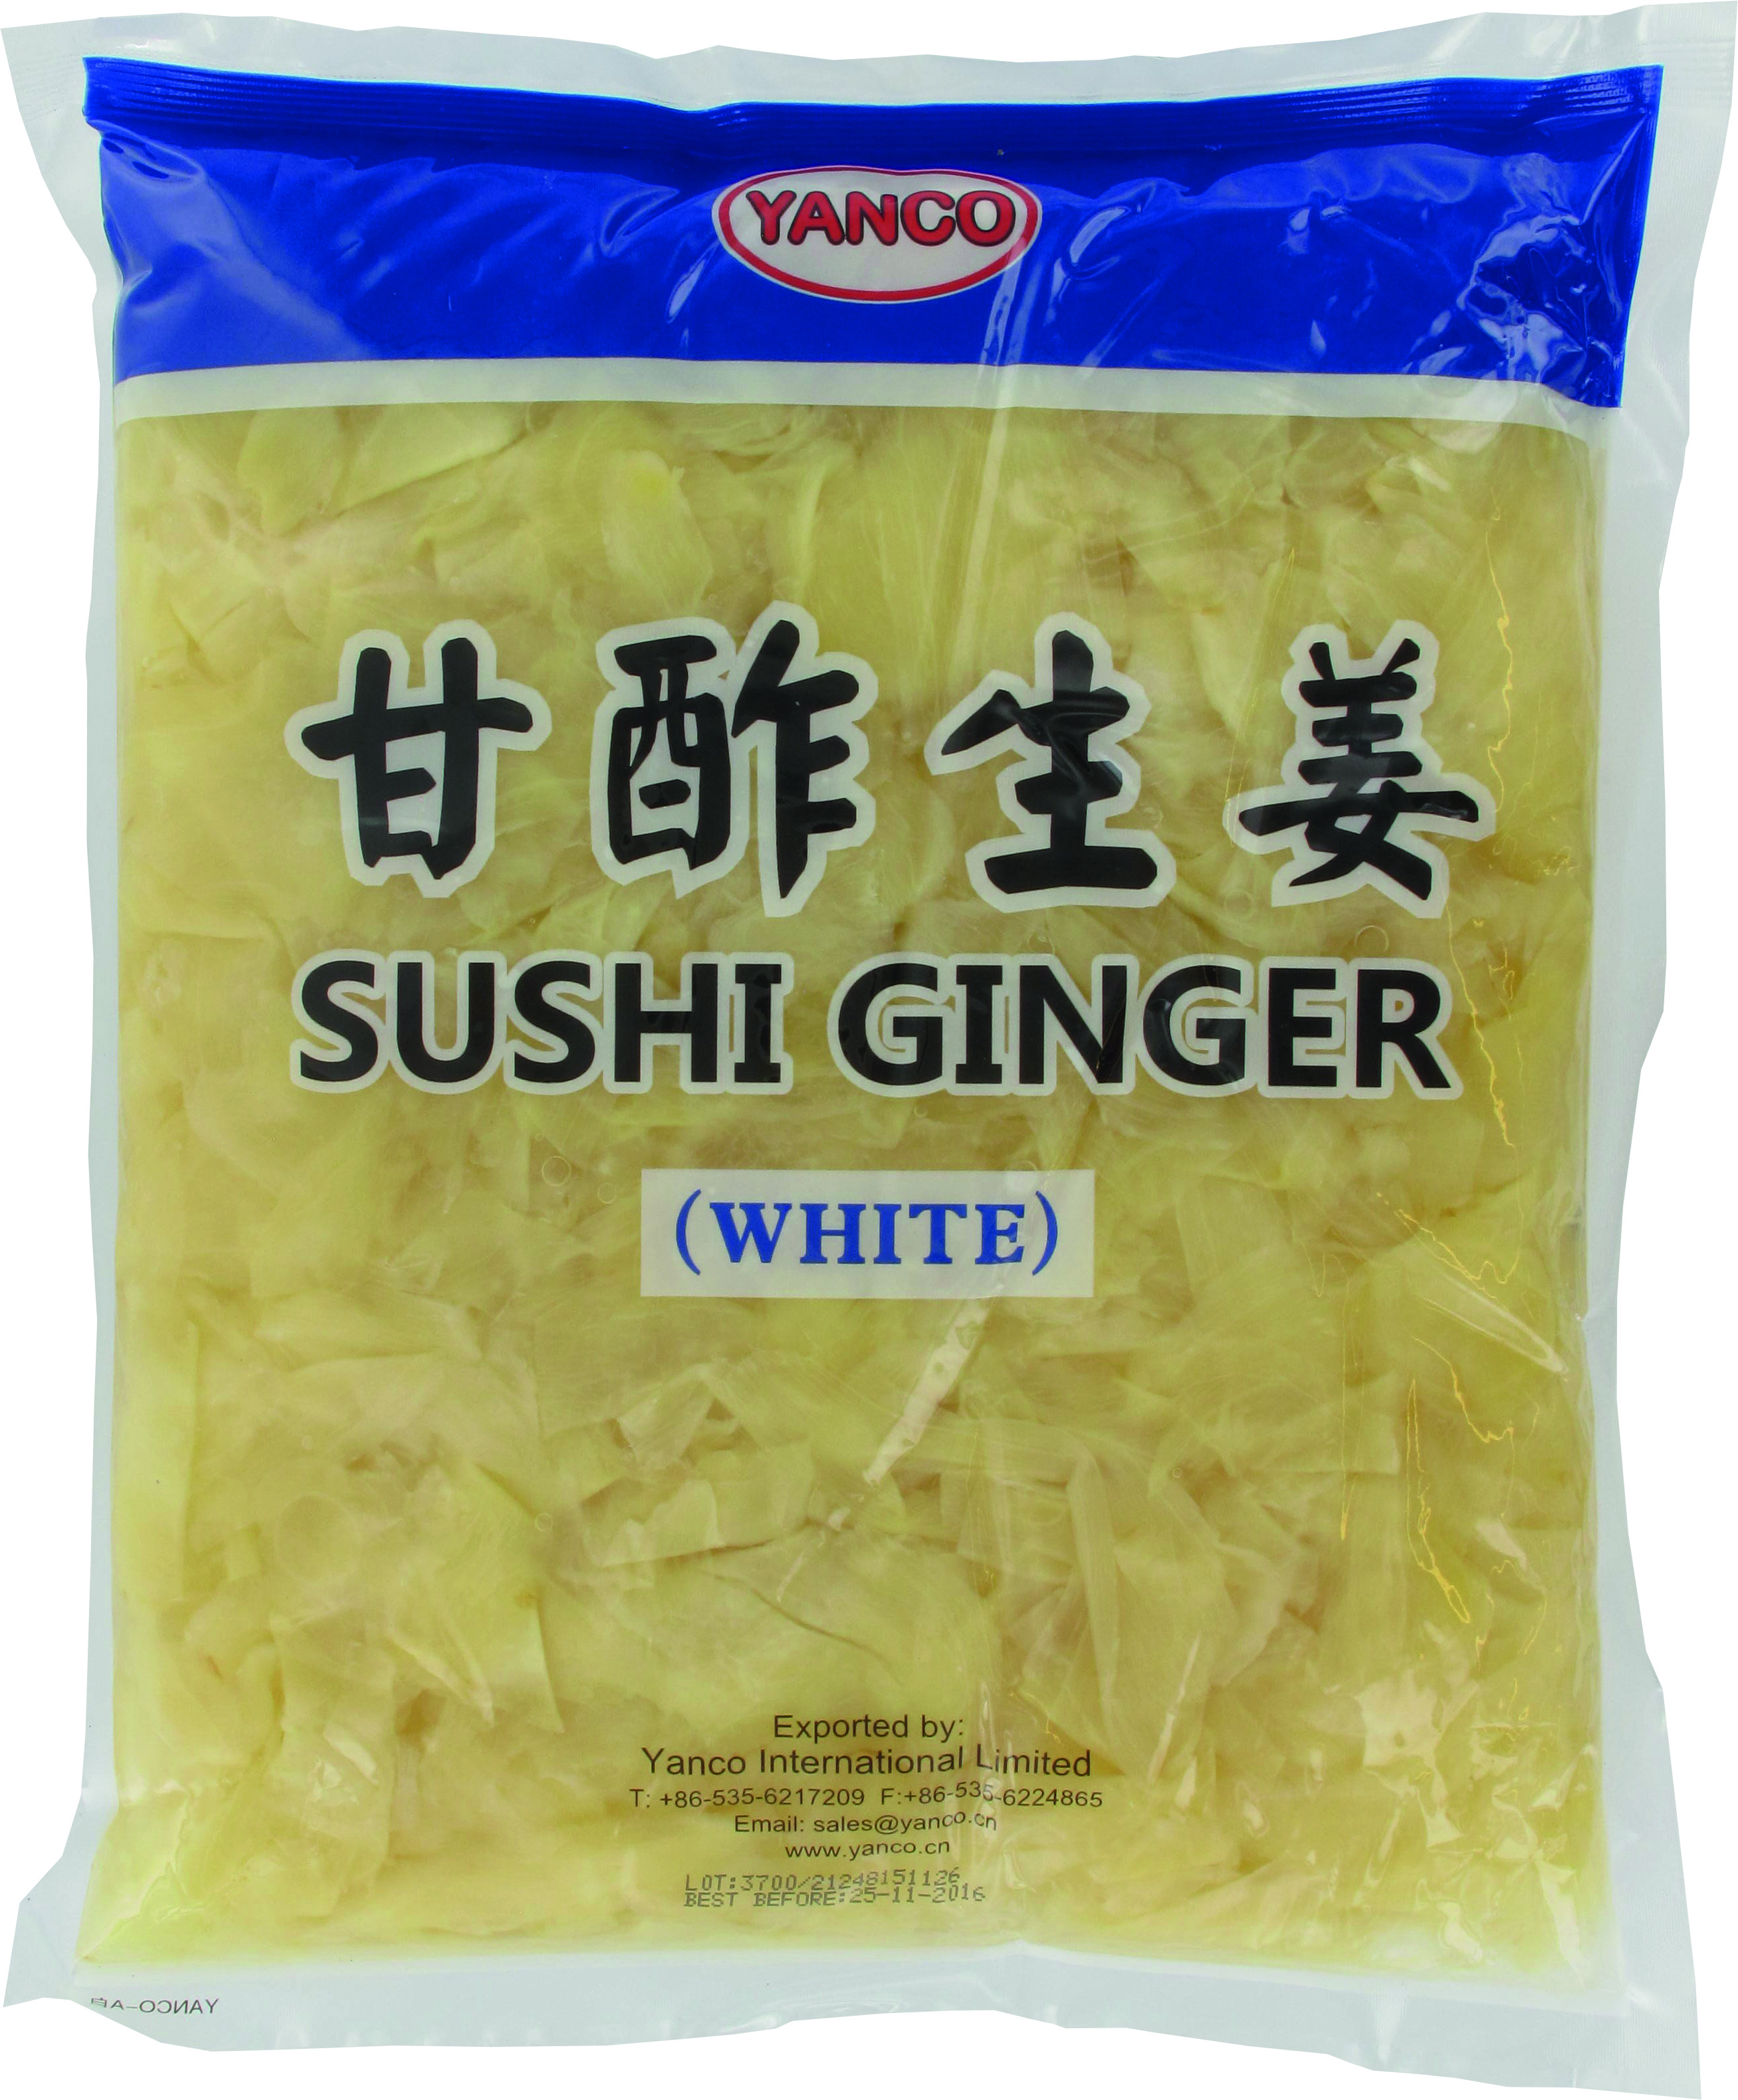 寿司用生姜(白) 10×1.5kg - Yanco